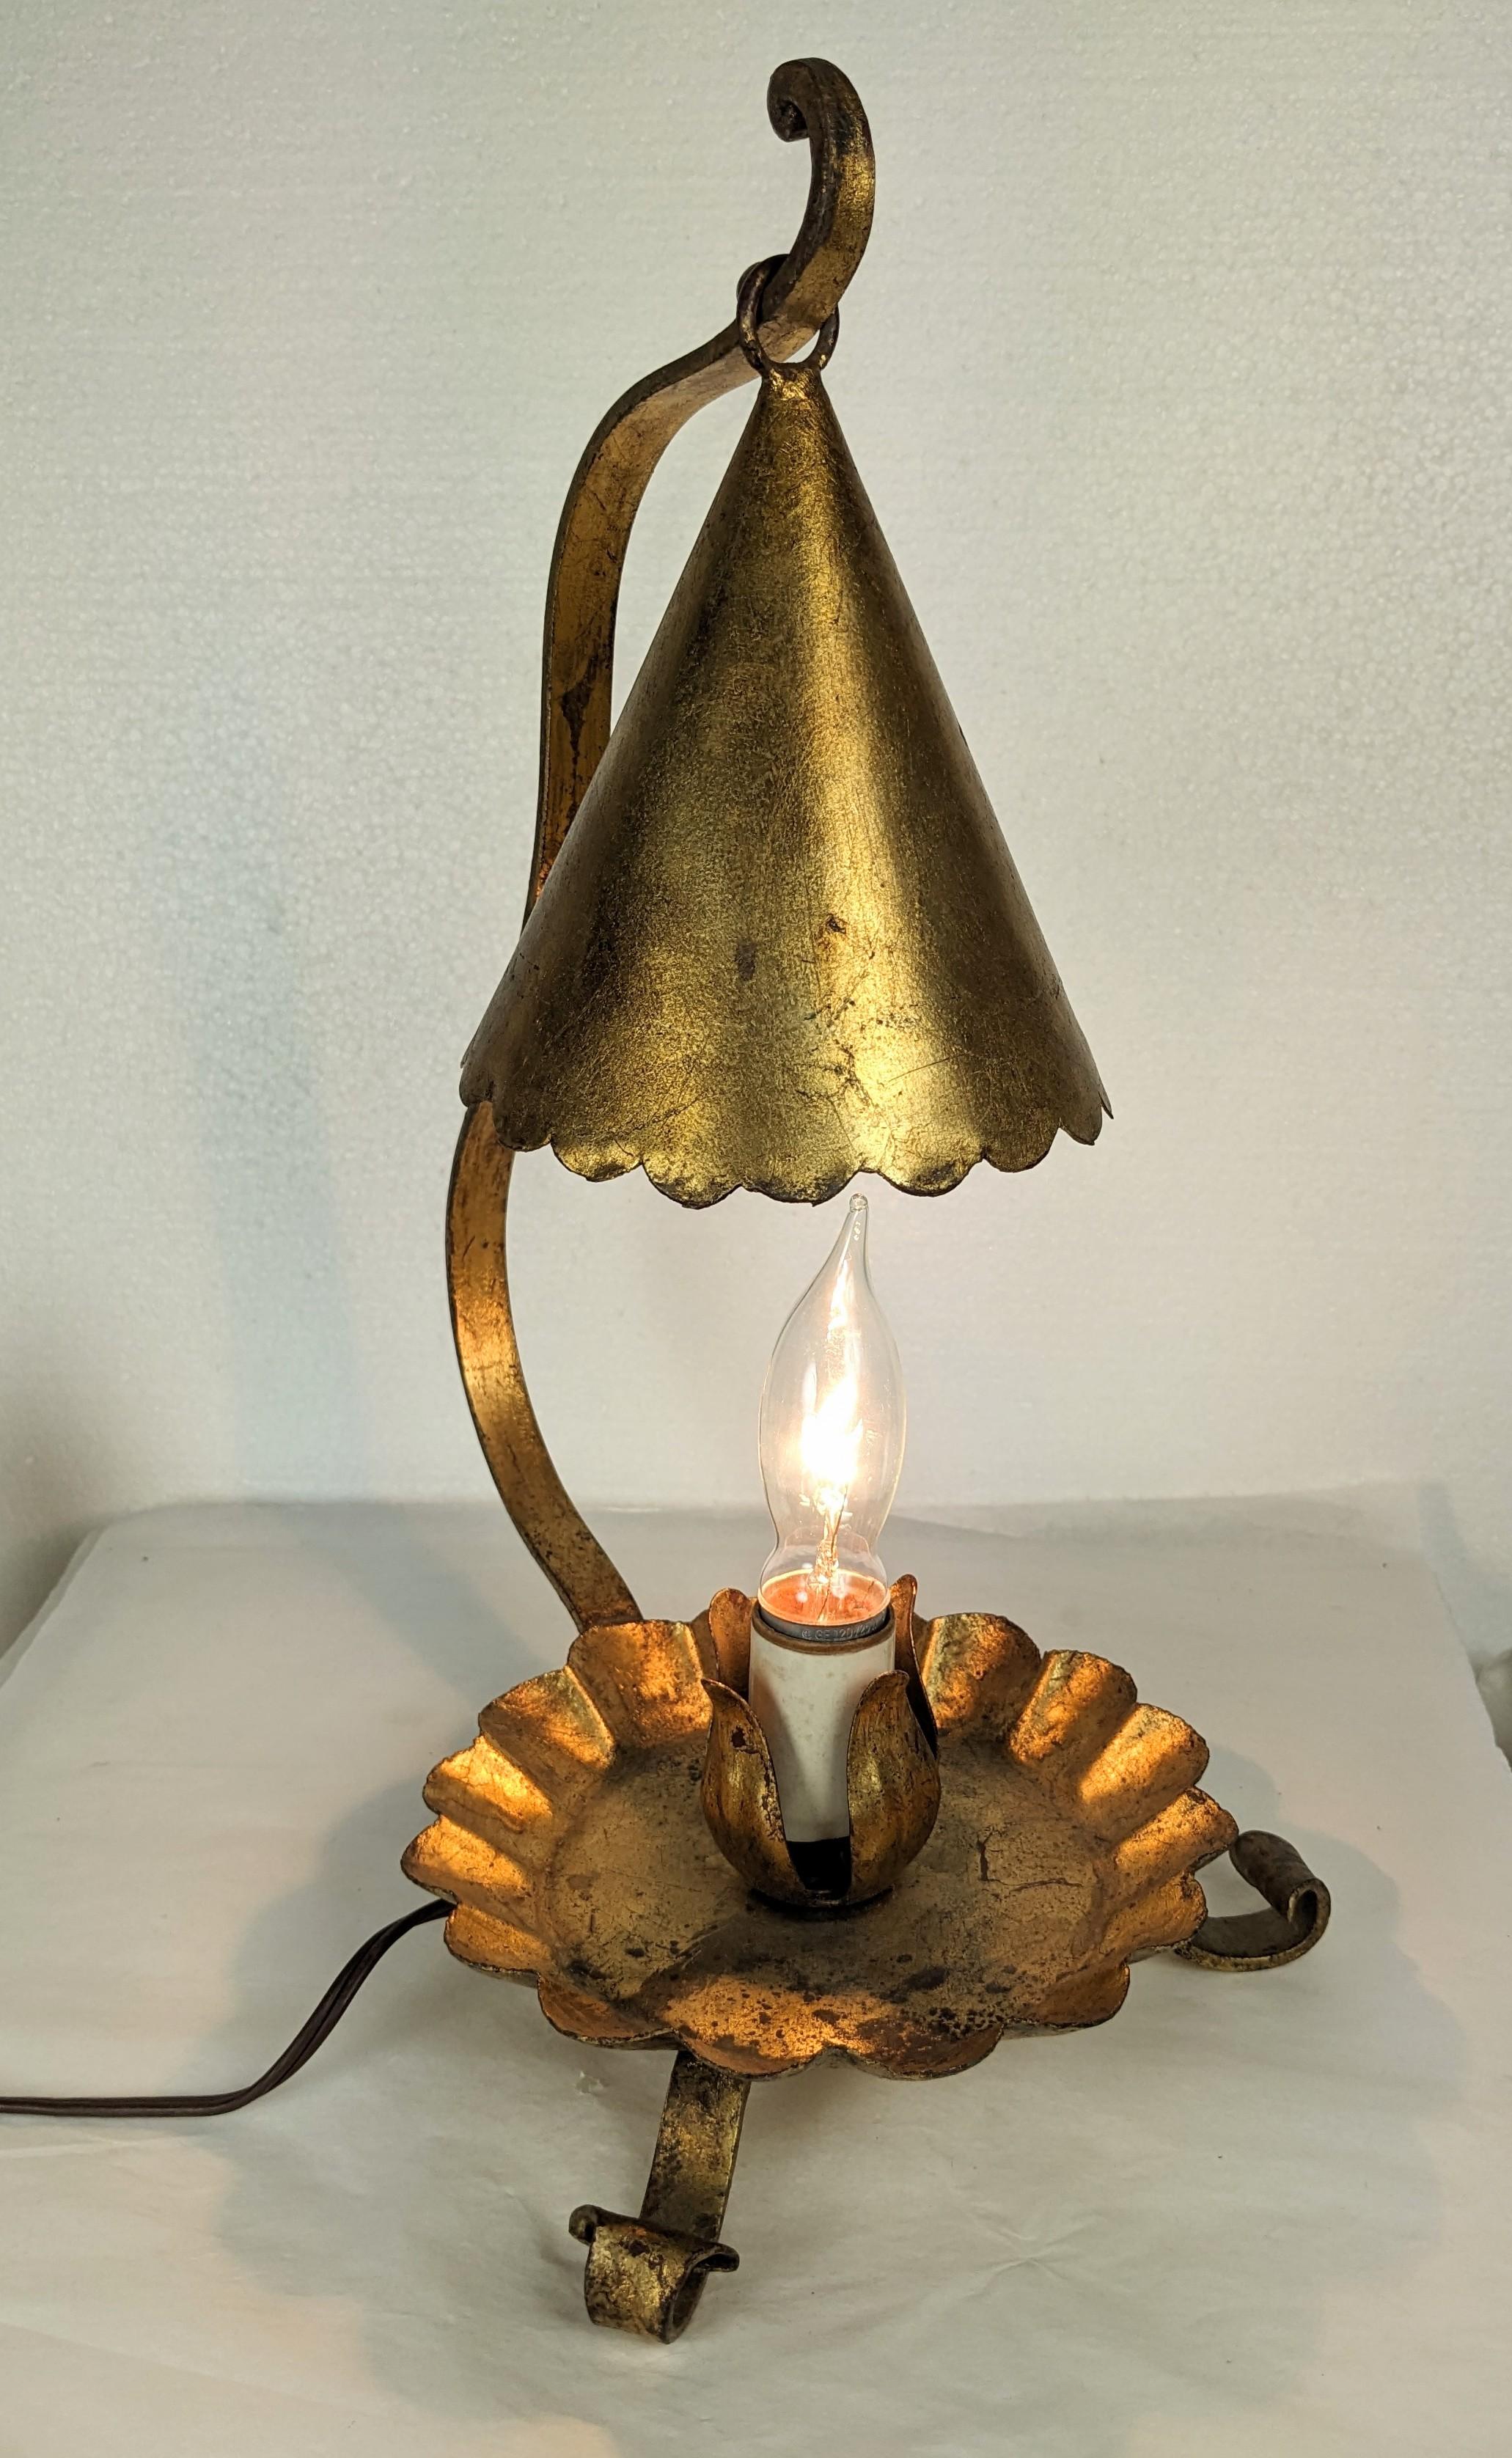 Charmante vergoldete Florentine Kerzenlöscher Lampe aus den 1960er Jahren. Entworfen als elektrischer Kerzenlöscher aus vergoldetem Messing. Schatten kommt aus Reinigung mit Schalter/Stecker in. 1960er Jahre Italien. 
